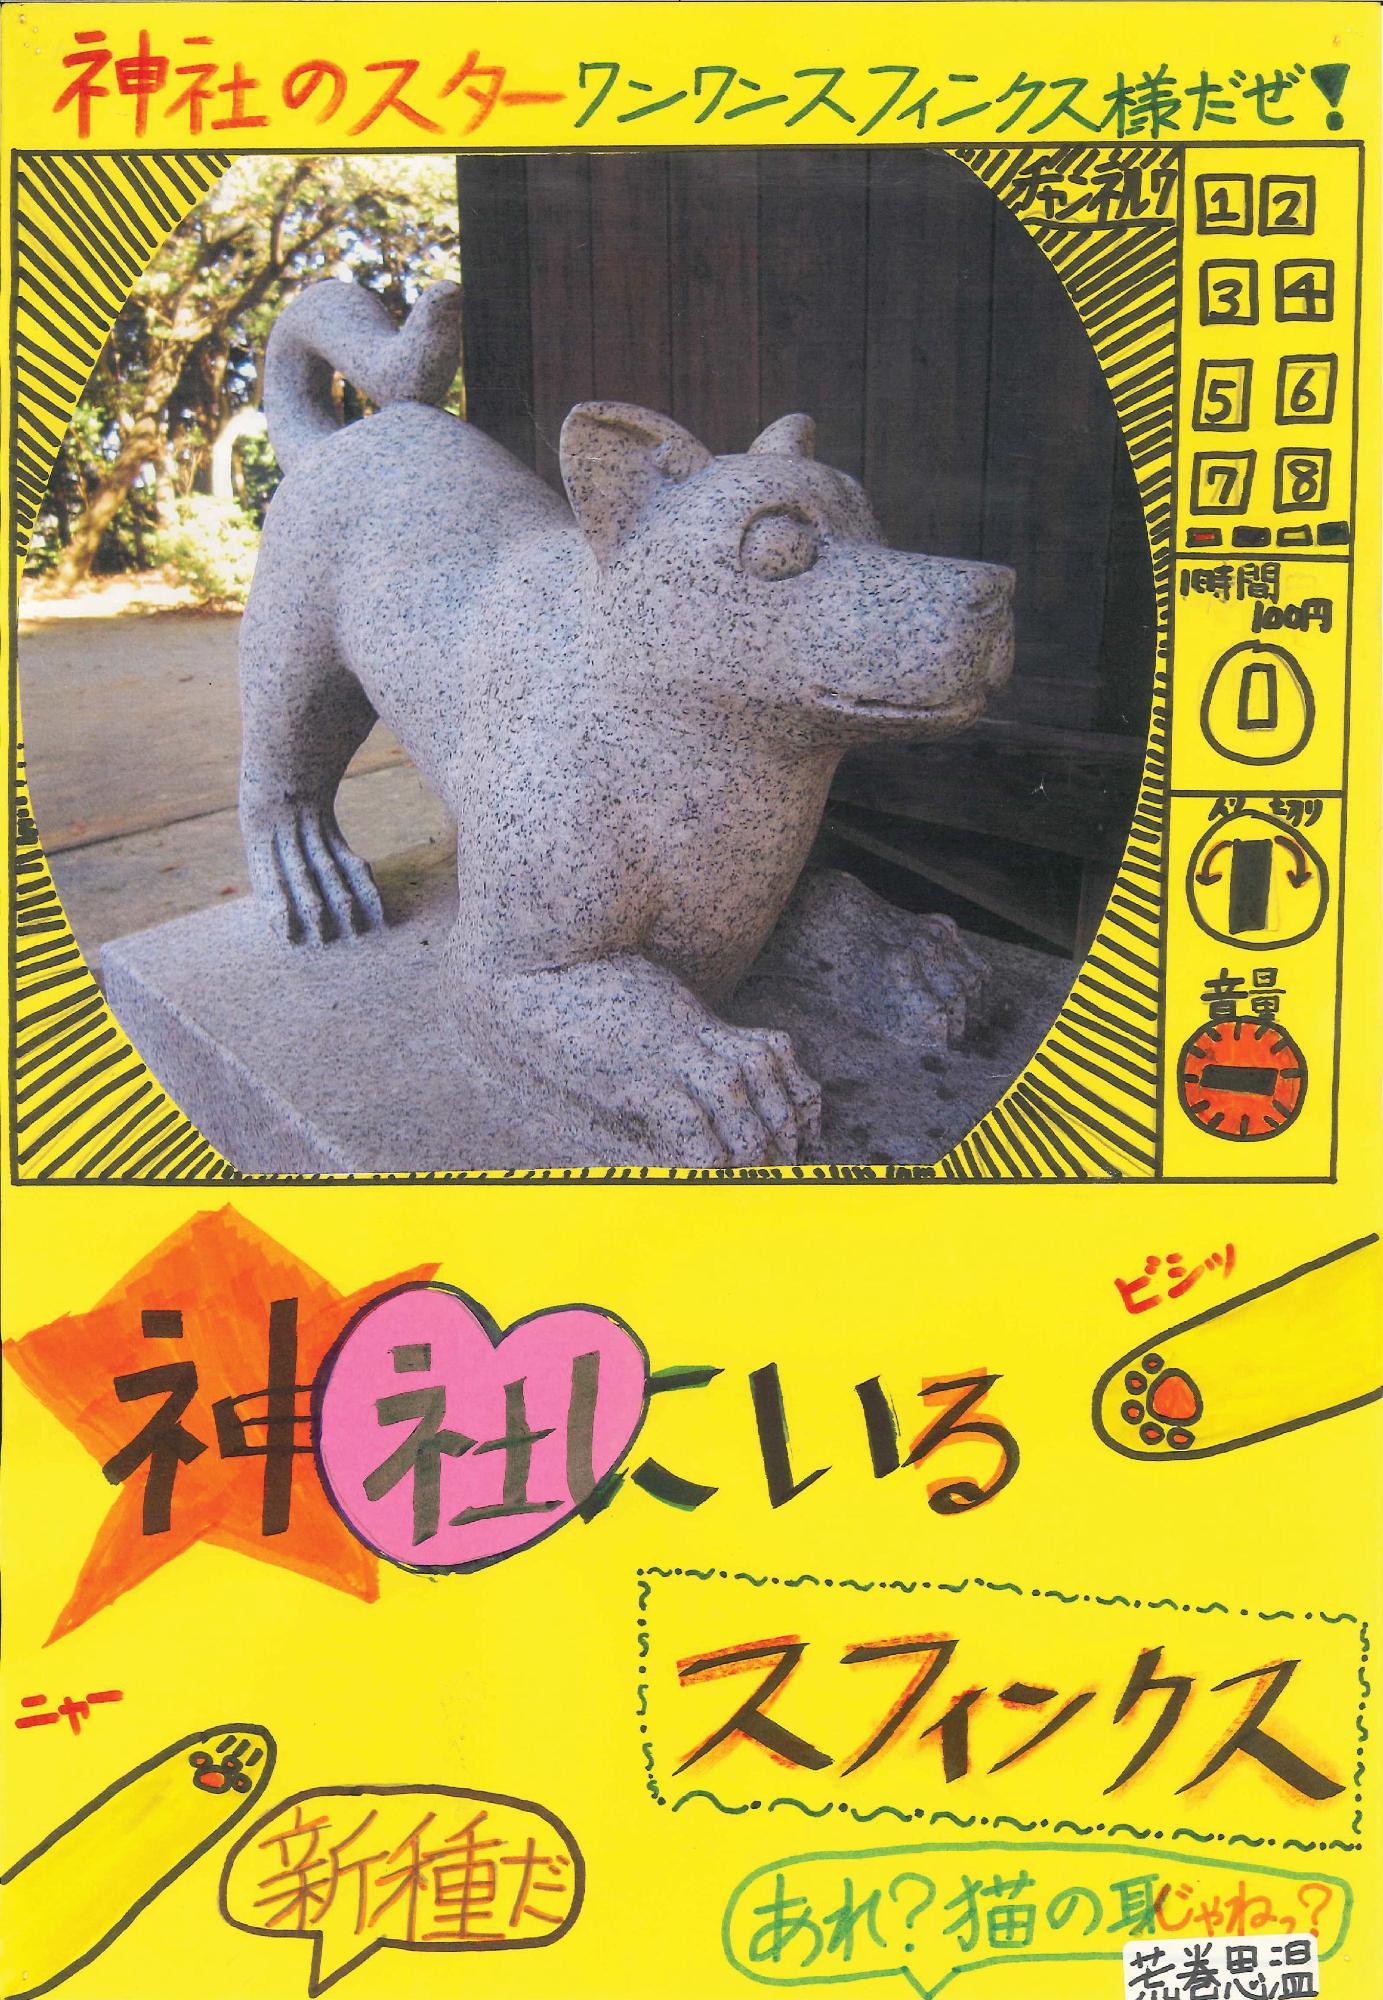 神社の本堂にいる伏せの姿勢の狛犬の写真に「神社にいるスフィンクス」というキャッチコピーが書かれたポスターの写真